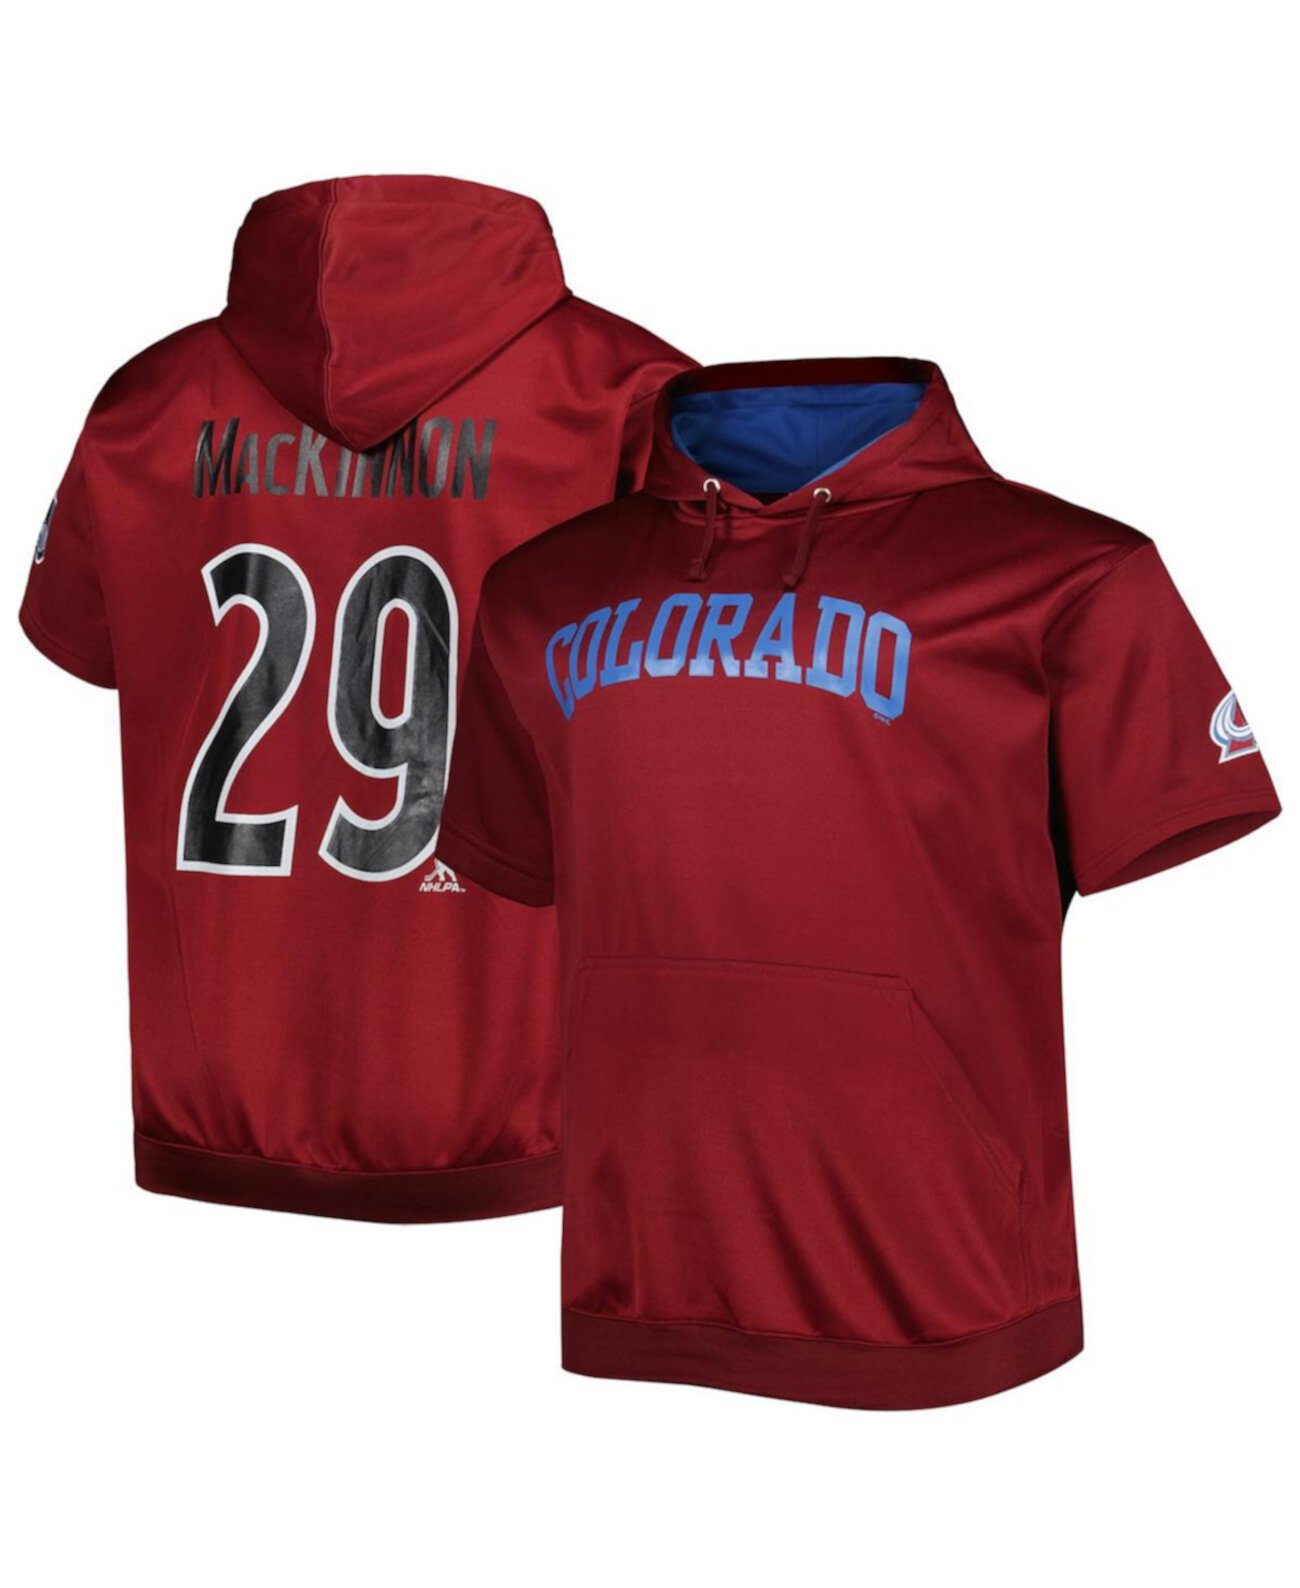 Мужской пуловер с капюшоном Nathan MacKinnon бордового цвета Colorado Avalanche Big and Tall с именем и номером Fanatics